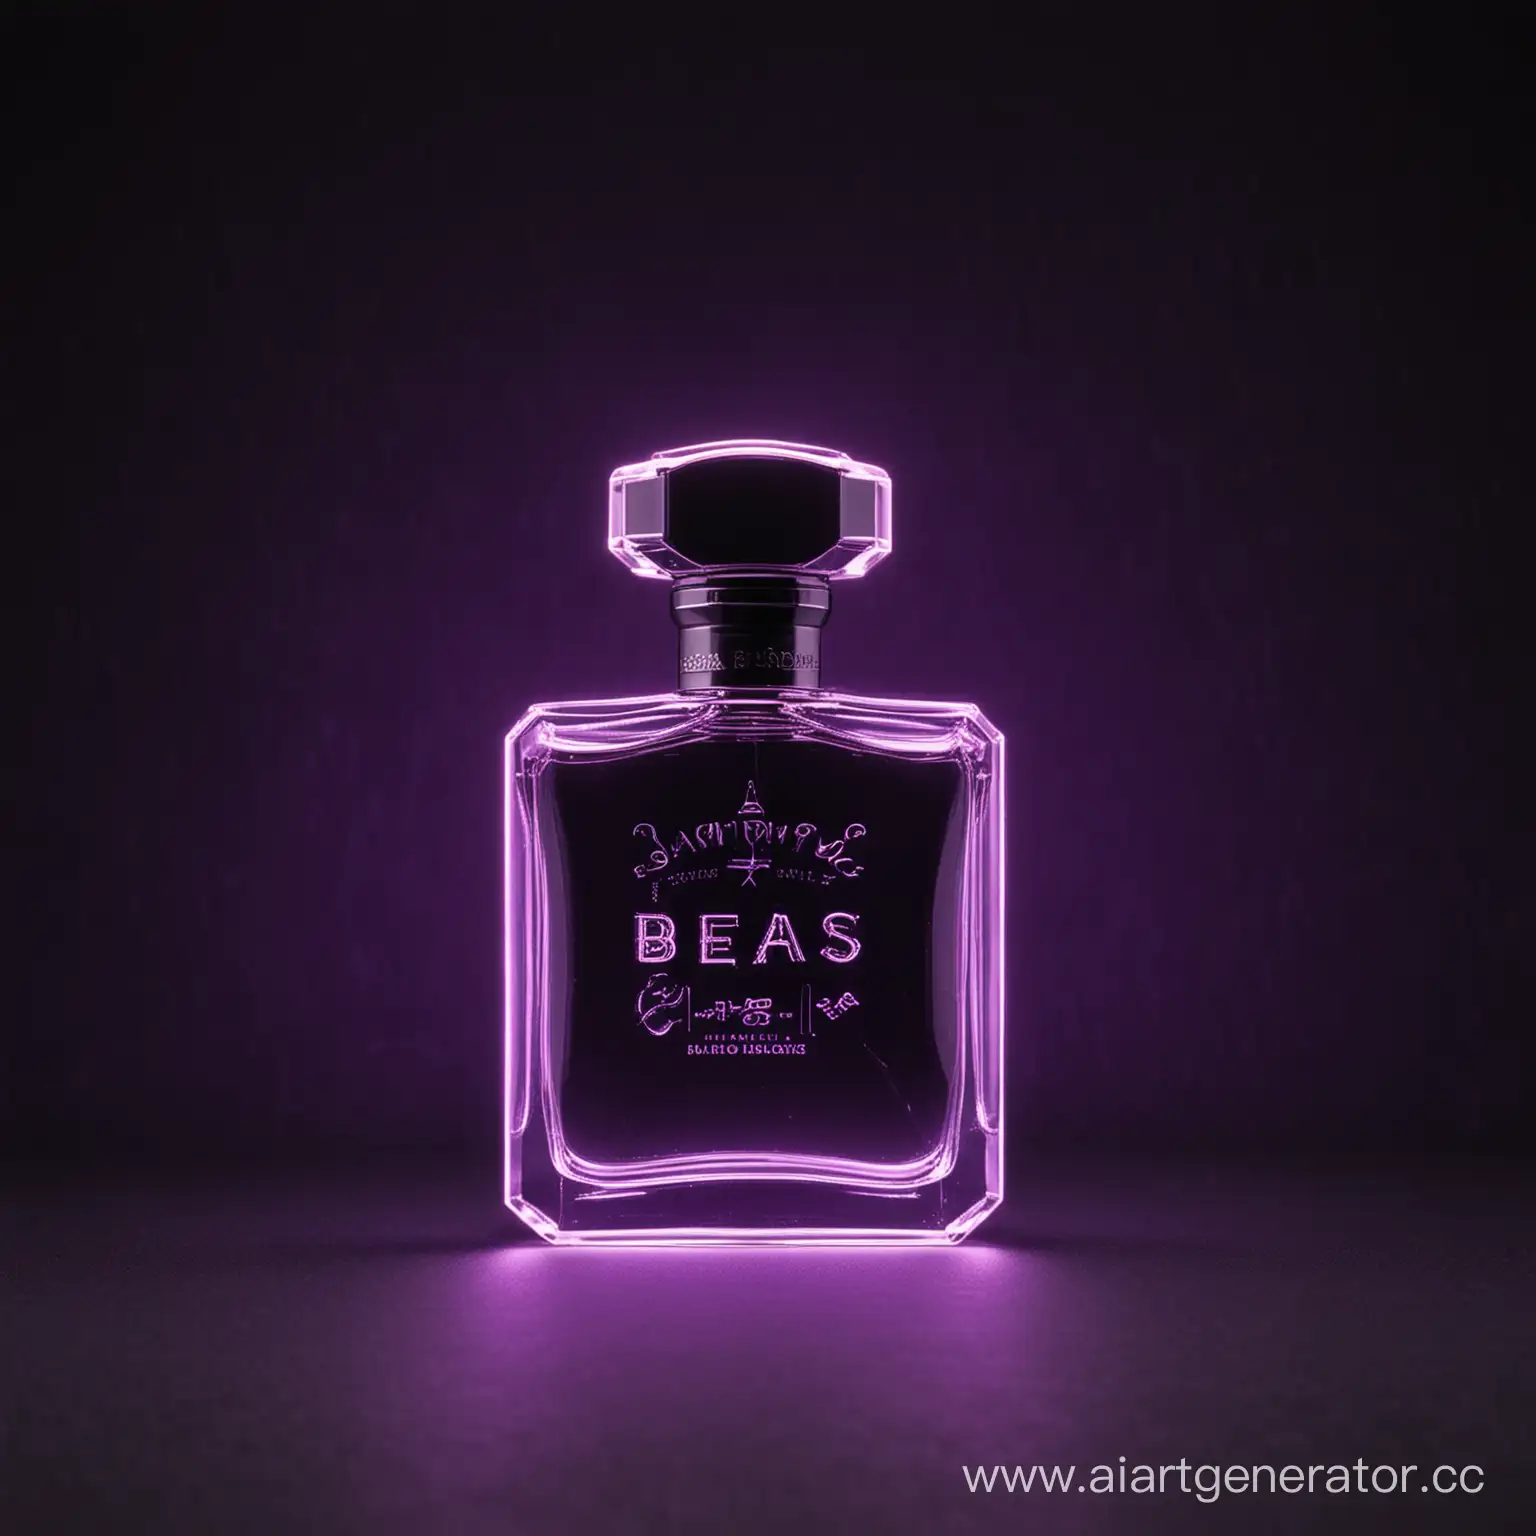 Логотип магазина парфюма, марка парфюма Beas, на черном фоне, c фиолетовым неонным свечением